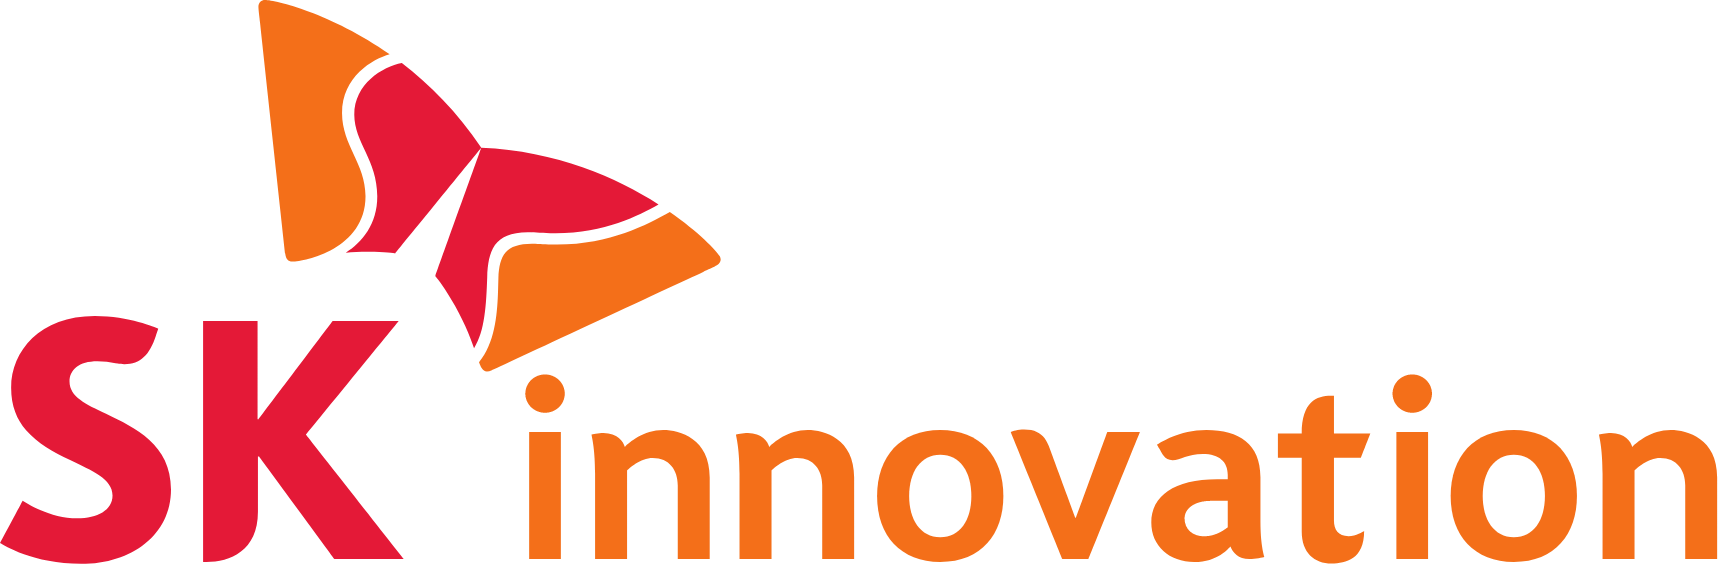 SK Innovation logo large (transparent PNG)